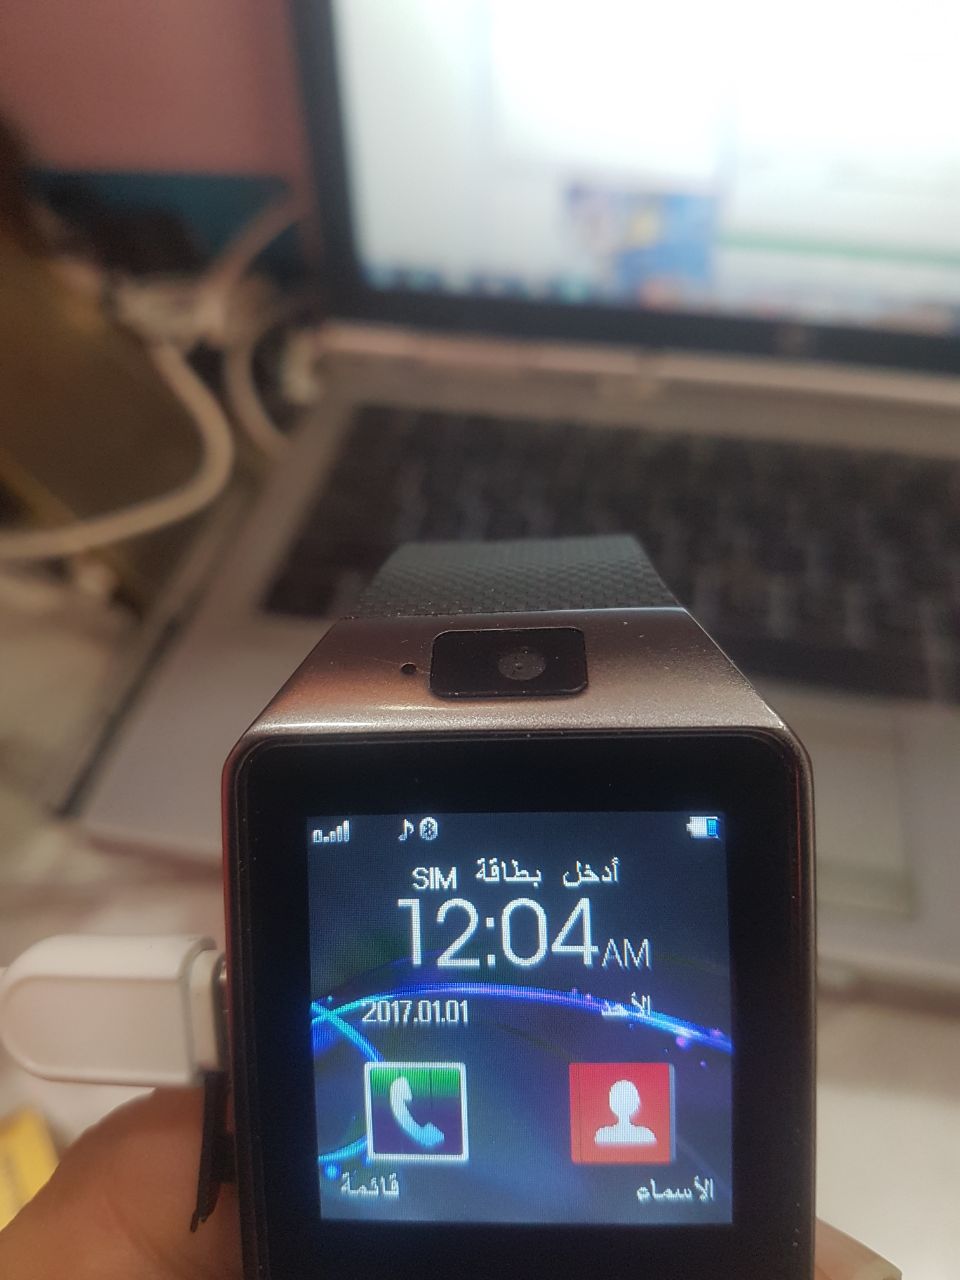 dz09 smartwatch update firmware